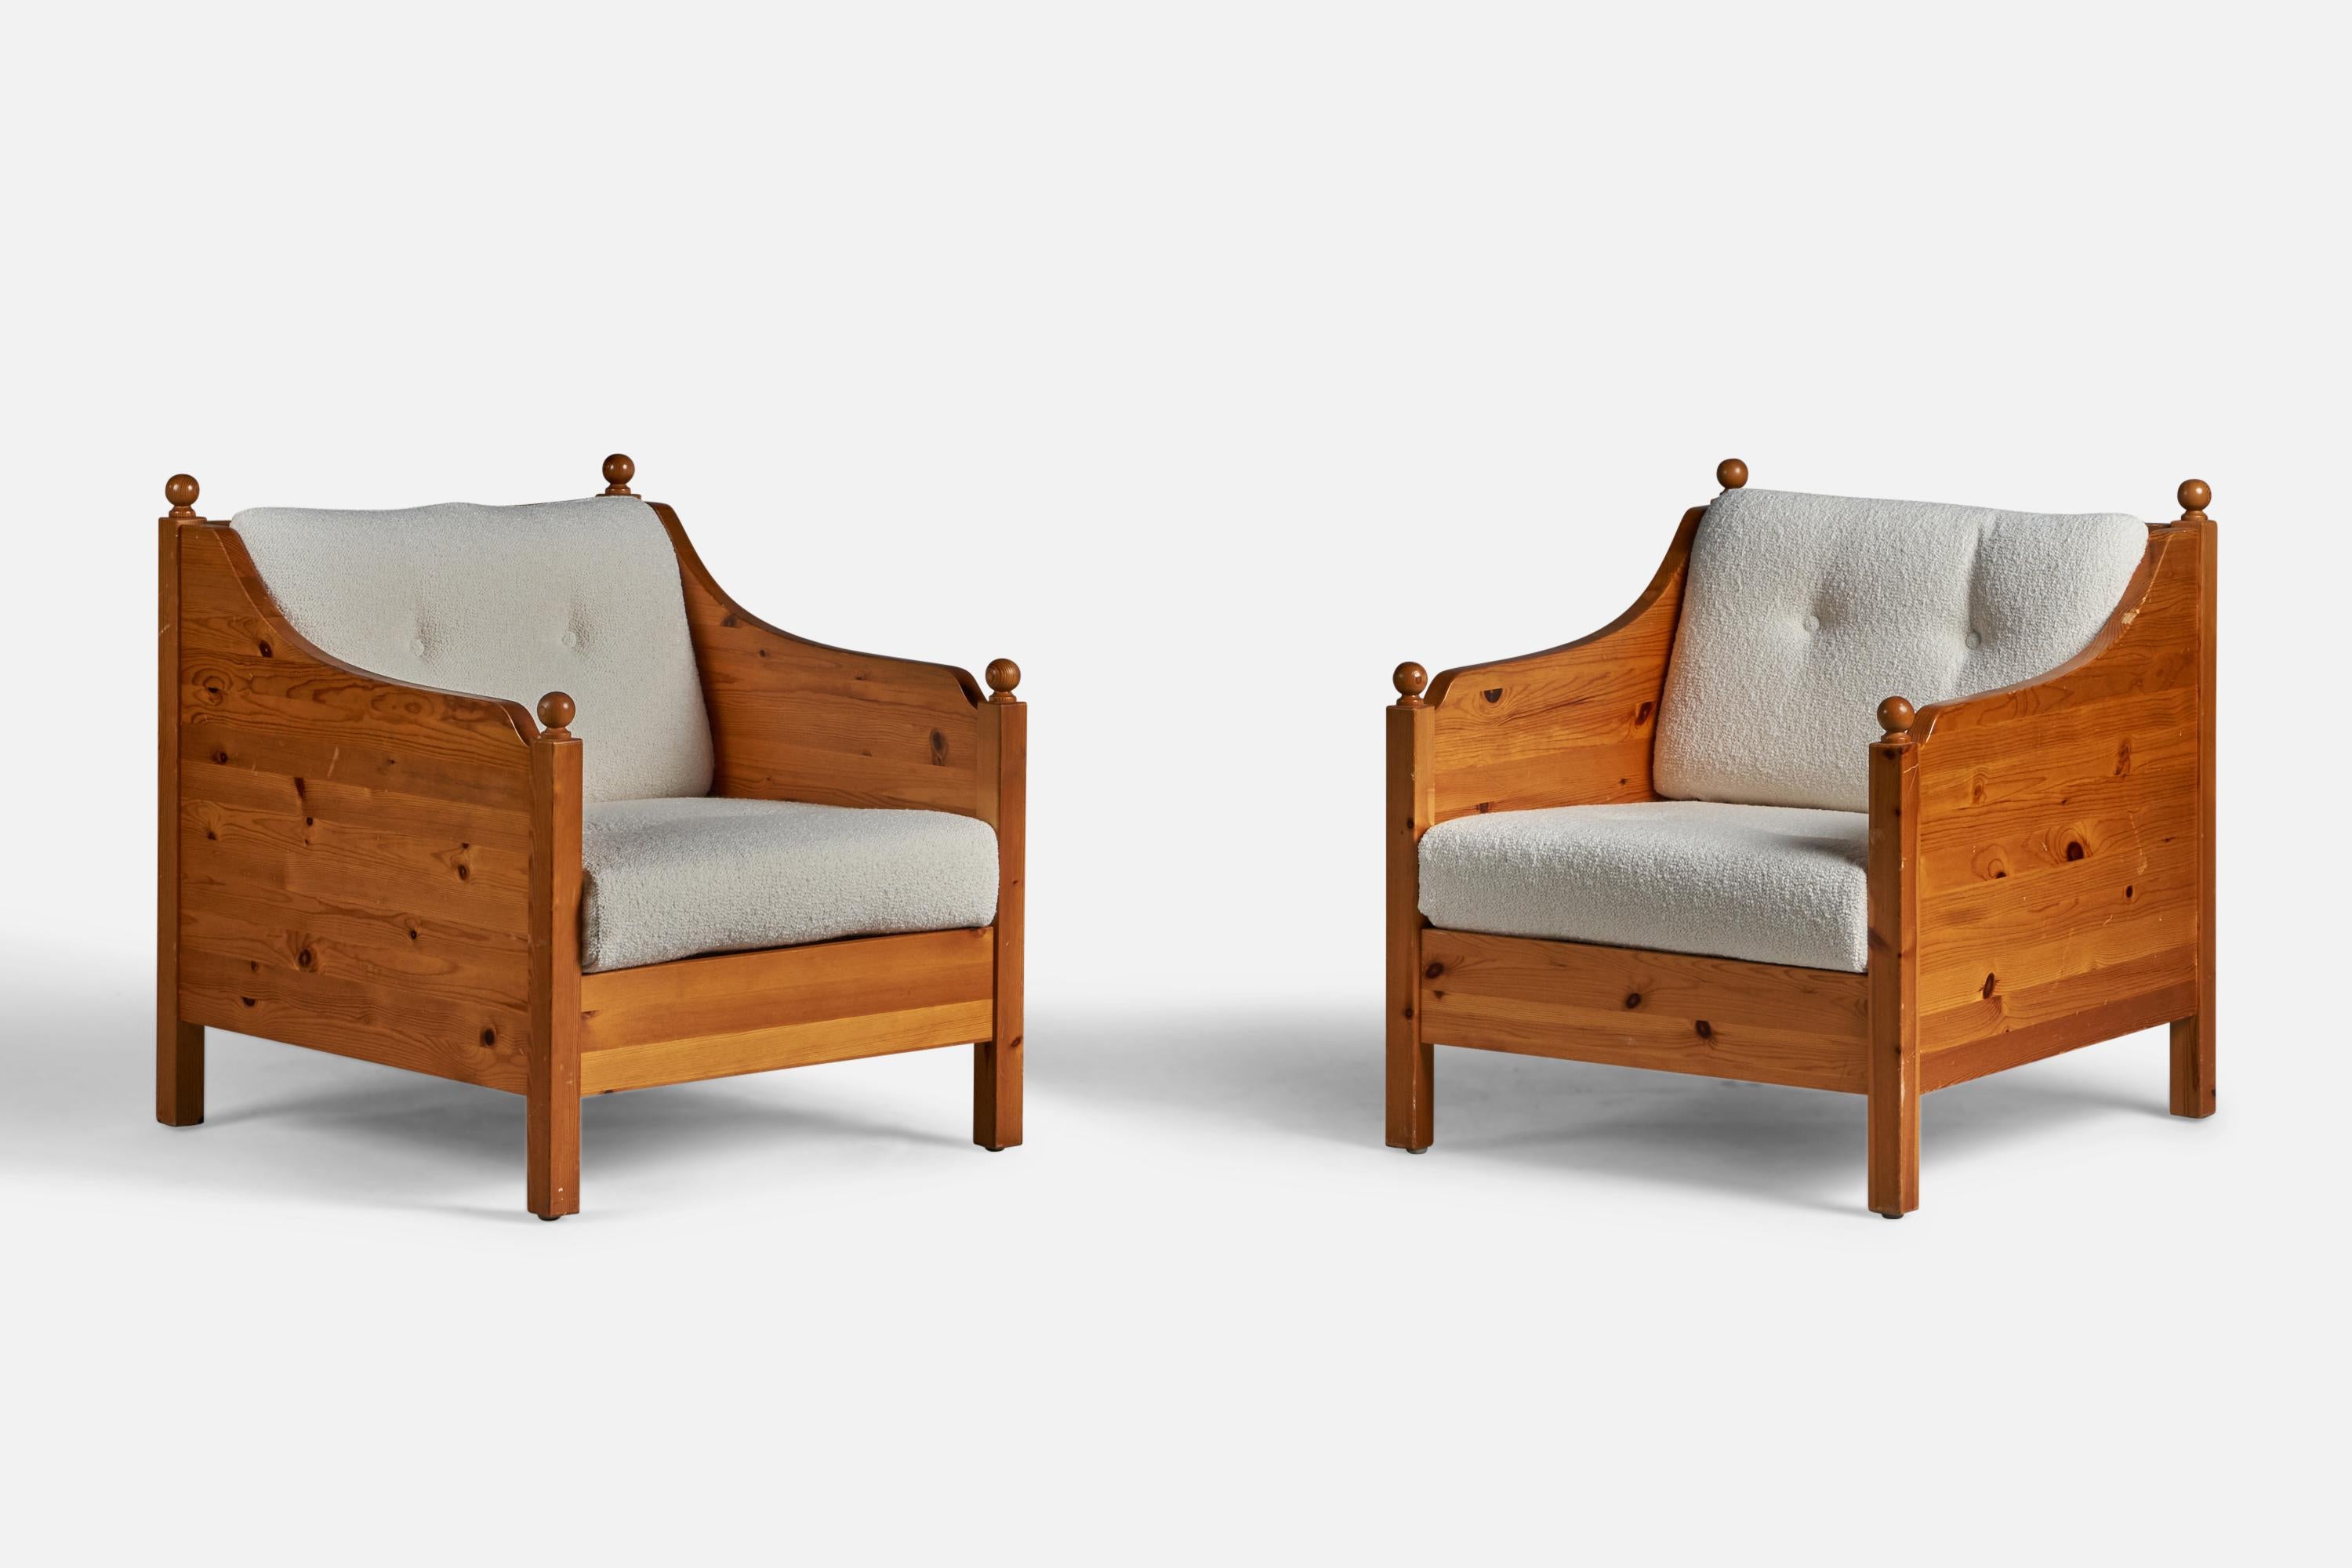 Paire de chaises de salon en pin massif et tissu bouclé blanc, conçues et produites en Suède, années 1970.

Hauteur d'assise de 15 pouces